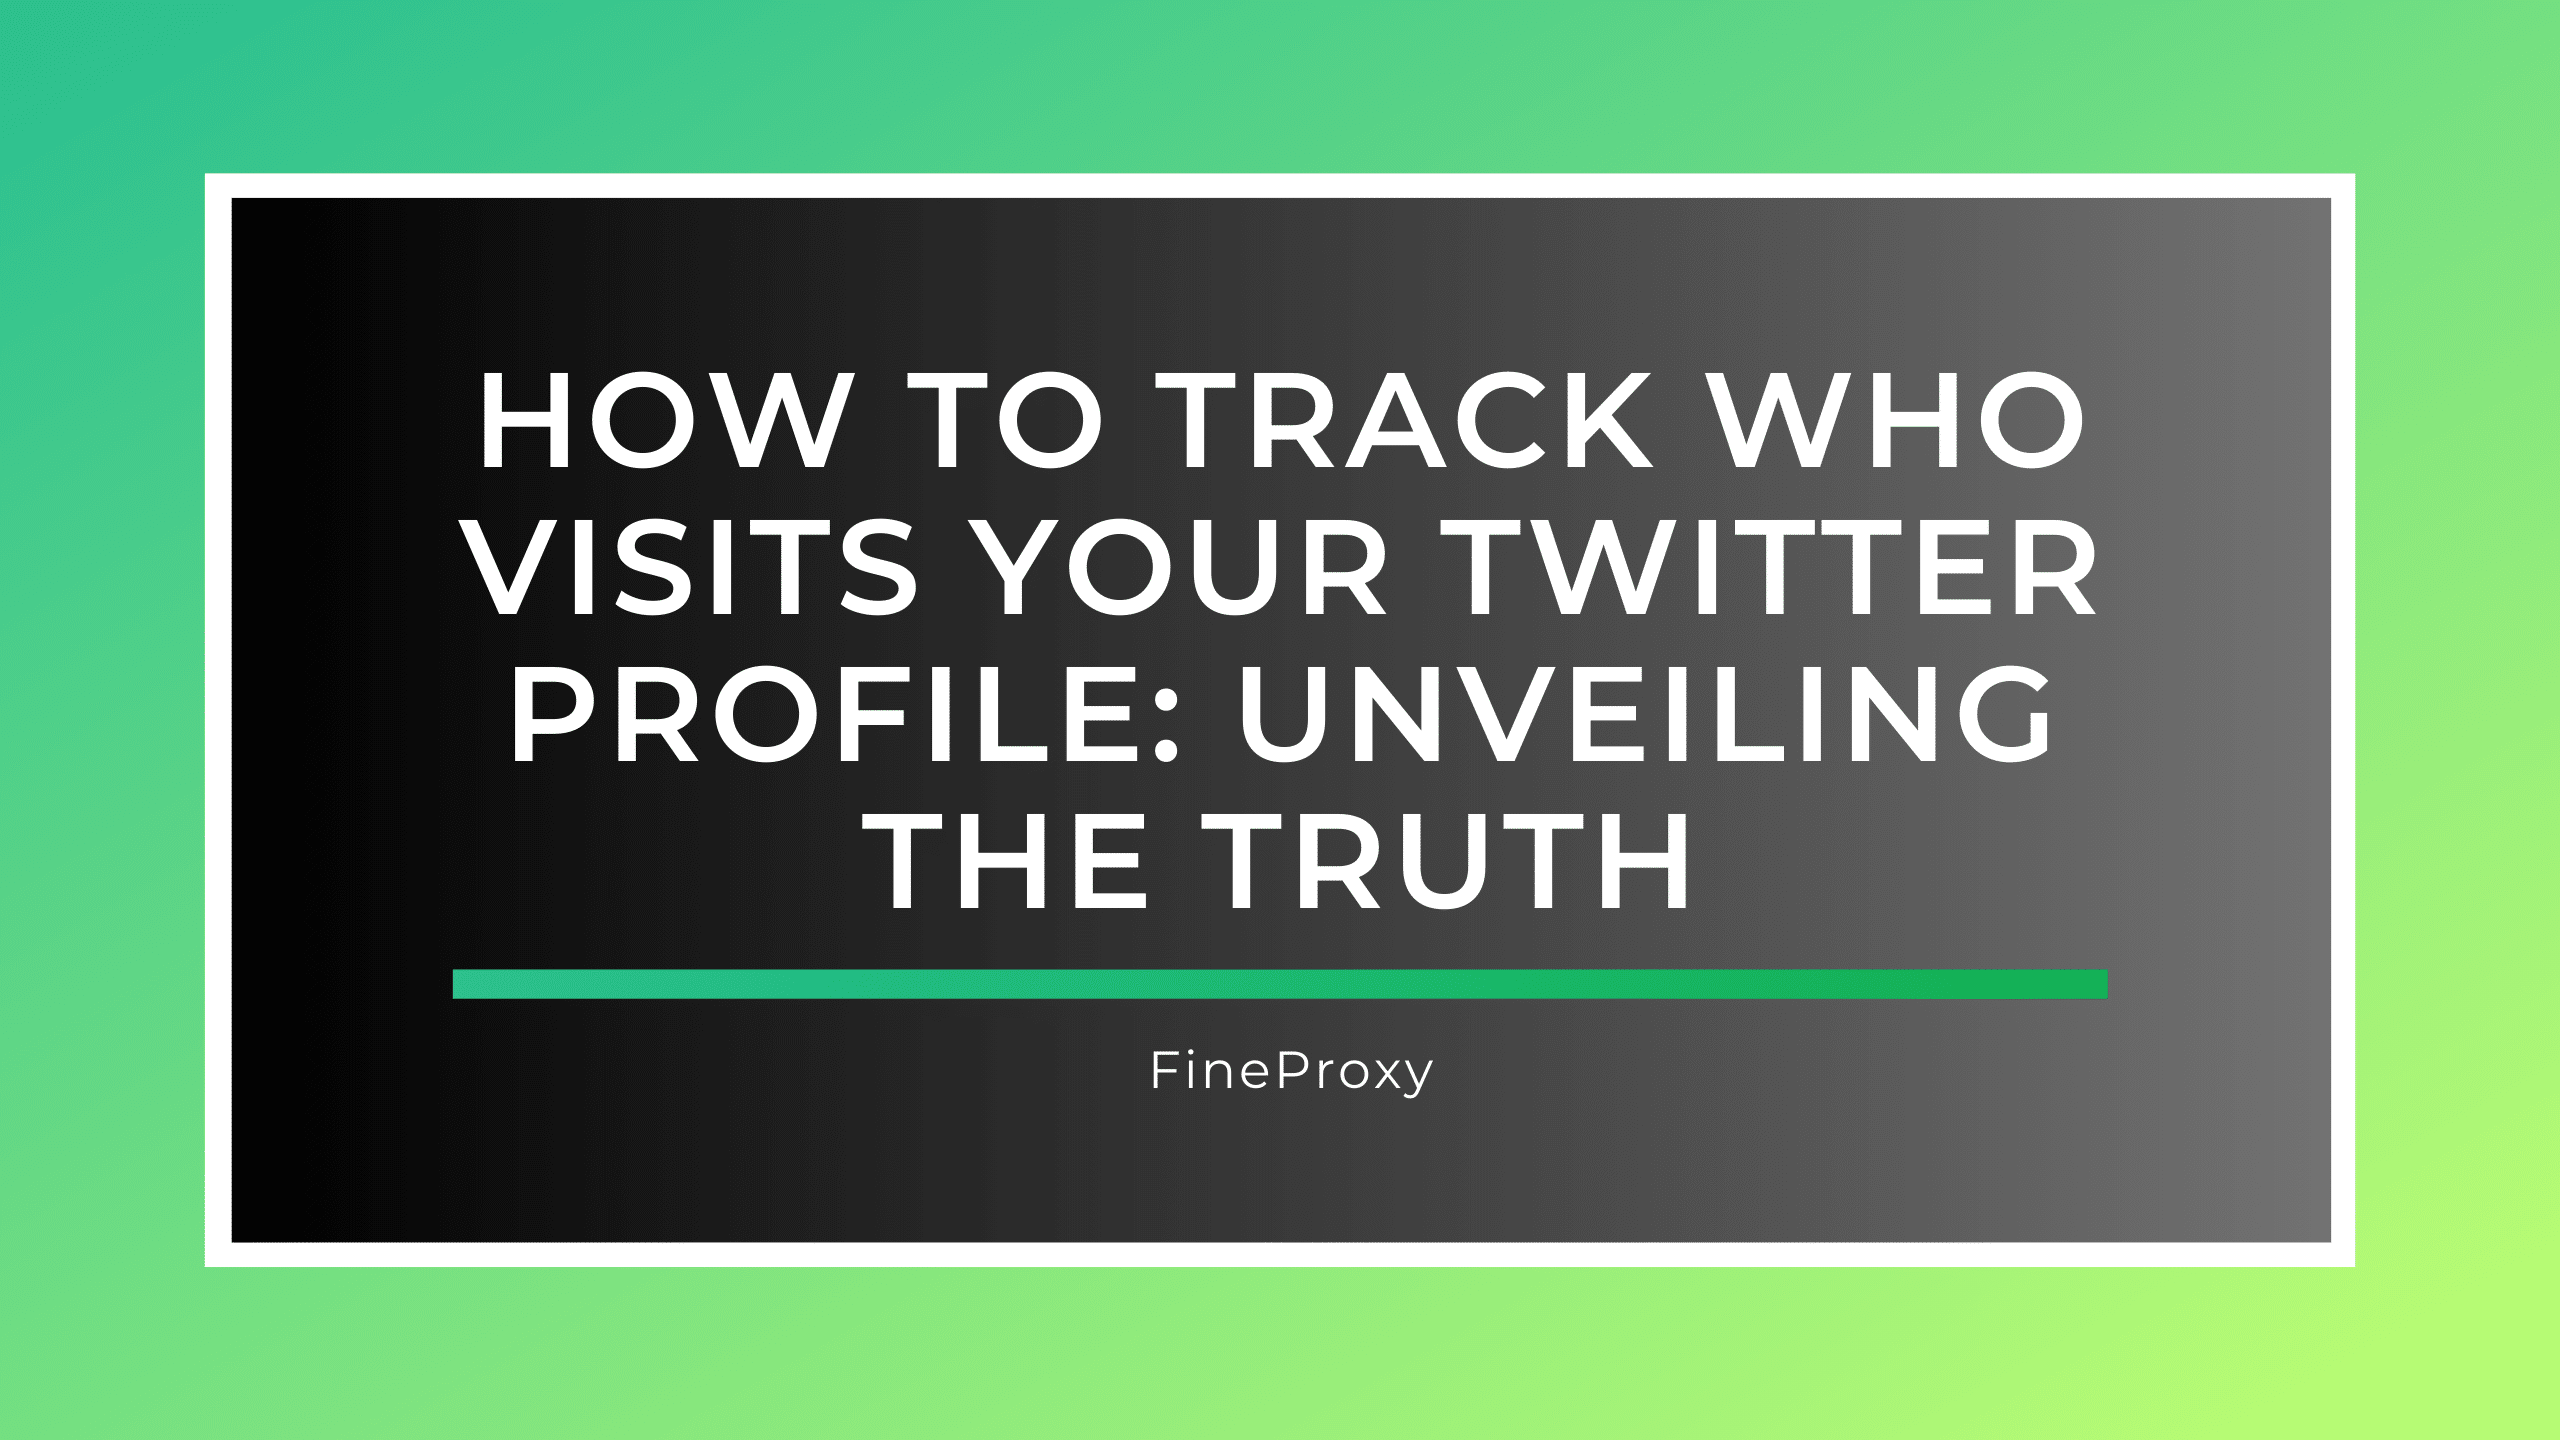 あなたの Twitter プロフィールにアクセスした人を追跡する方法: 真実を明らかにする